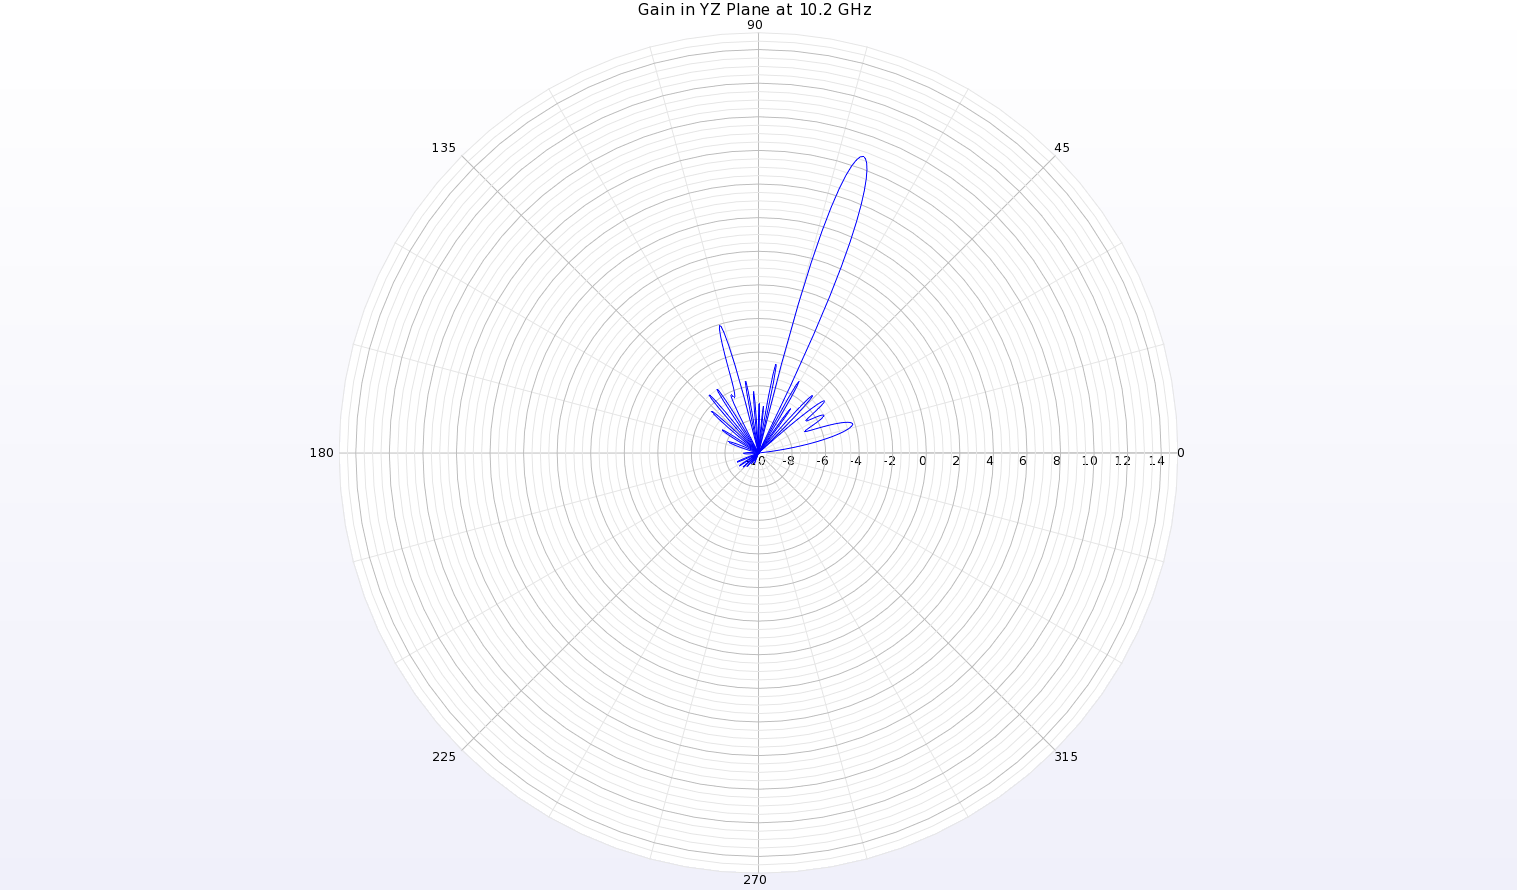 Abbildung 7: Eine Polardiagramm des Gewinndiagramms bei 10,2 GHz in der YZ-Ebene (entlang der Länge der Antenne) zeigt einen schmalen Strahl bei theta=70 Grad mit einem Gewinn von etwa 8,6 dBi.